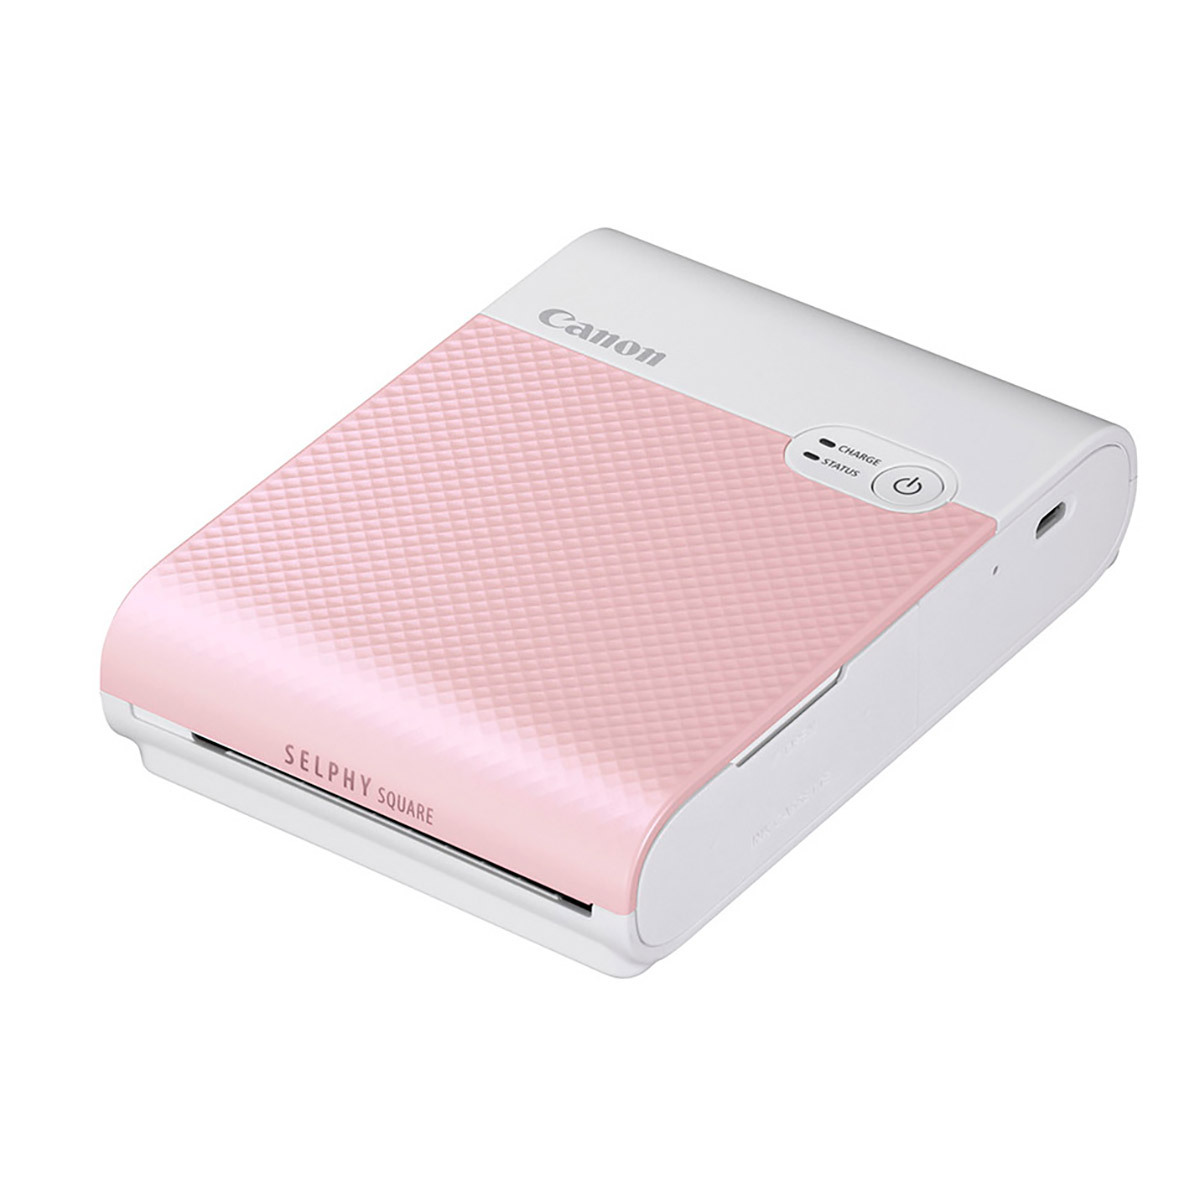 캐논 컴팩트 포토프린터 QX10 & 인화지 XS-20L 세트 - 핑크